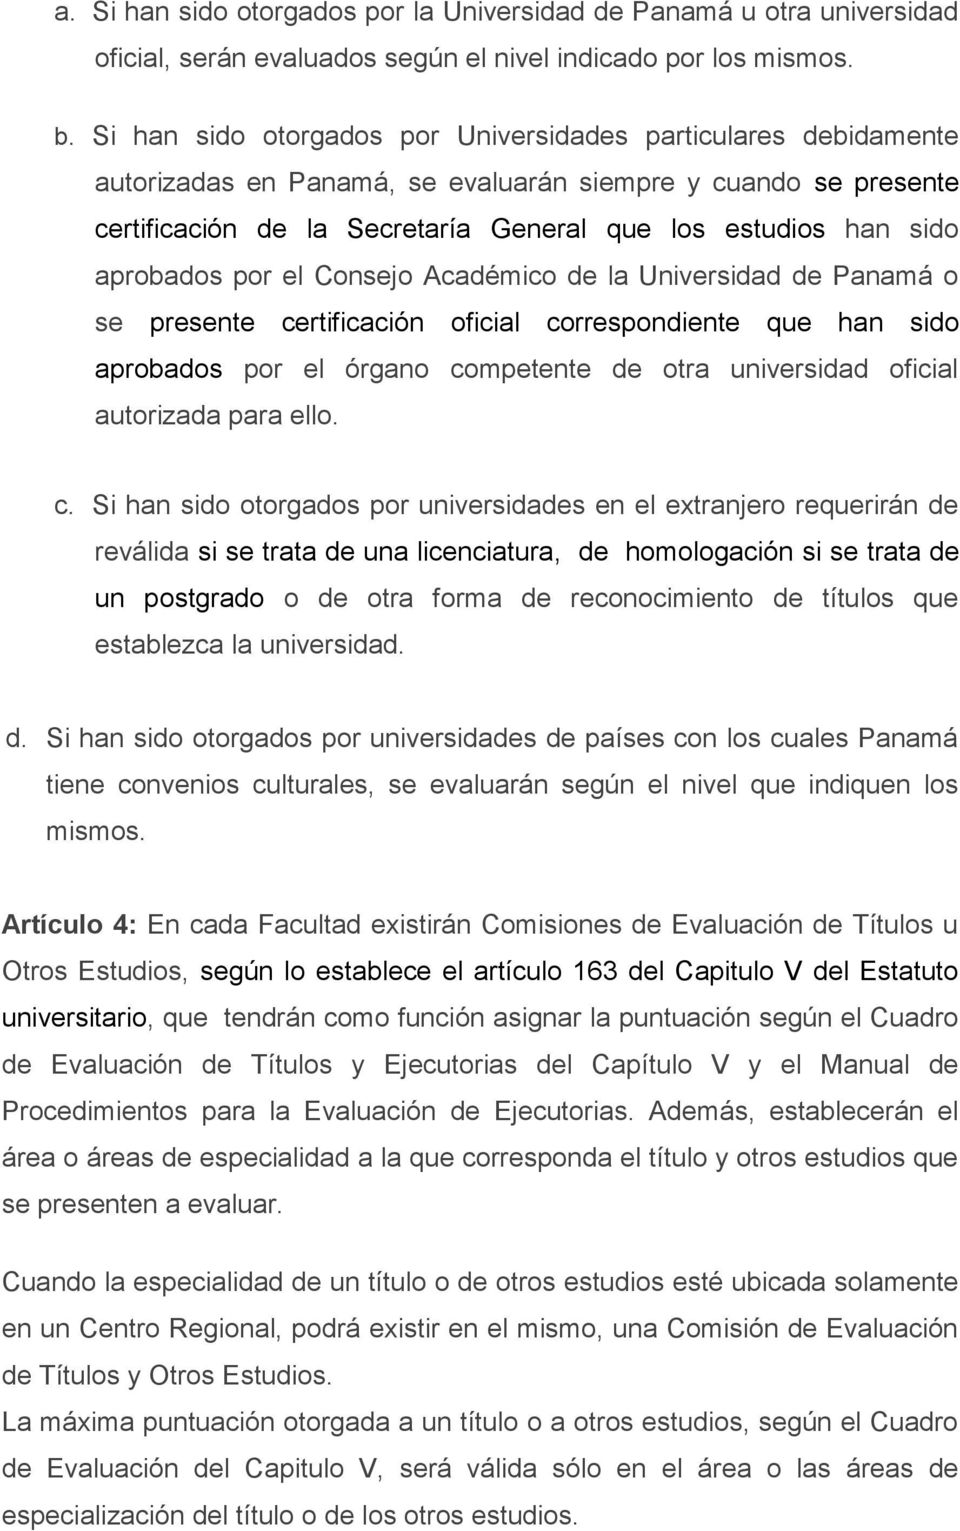 aprobados por el Consejo Académico de la Universidad de Panamá o se presente certificación oficial correspondiente que han sido aprobados por el órgano competente de otra universidad oficial